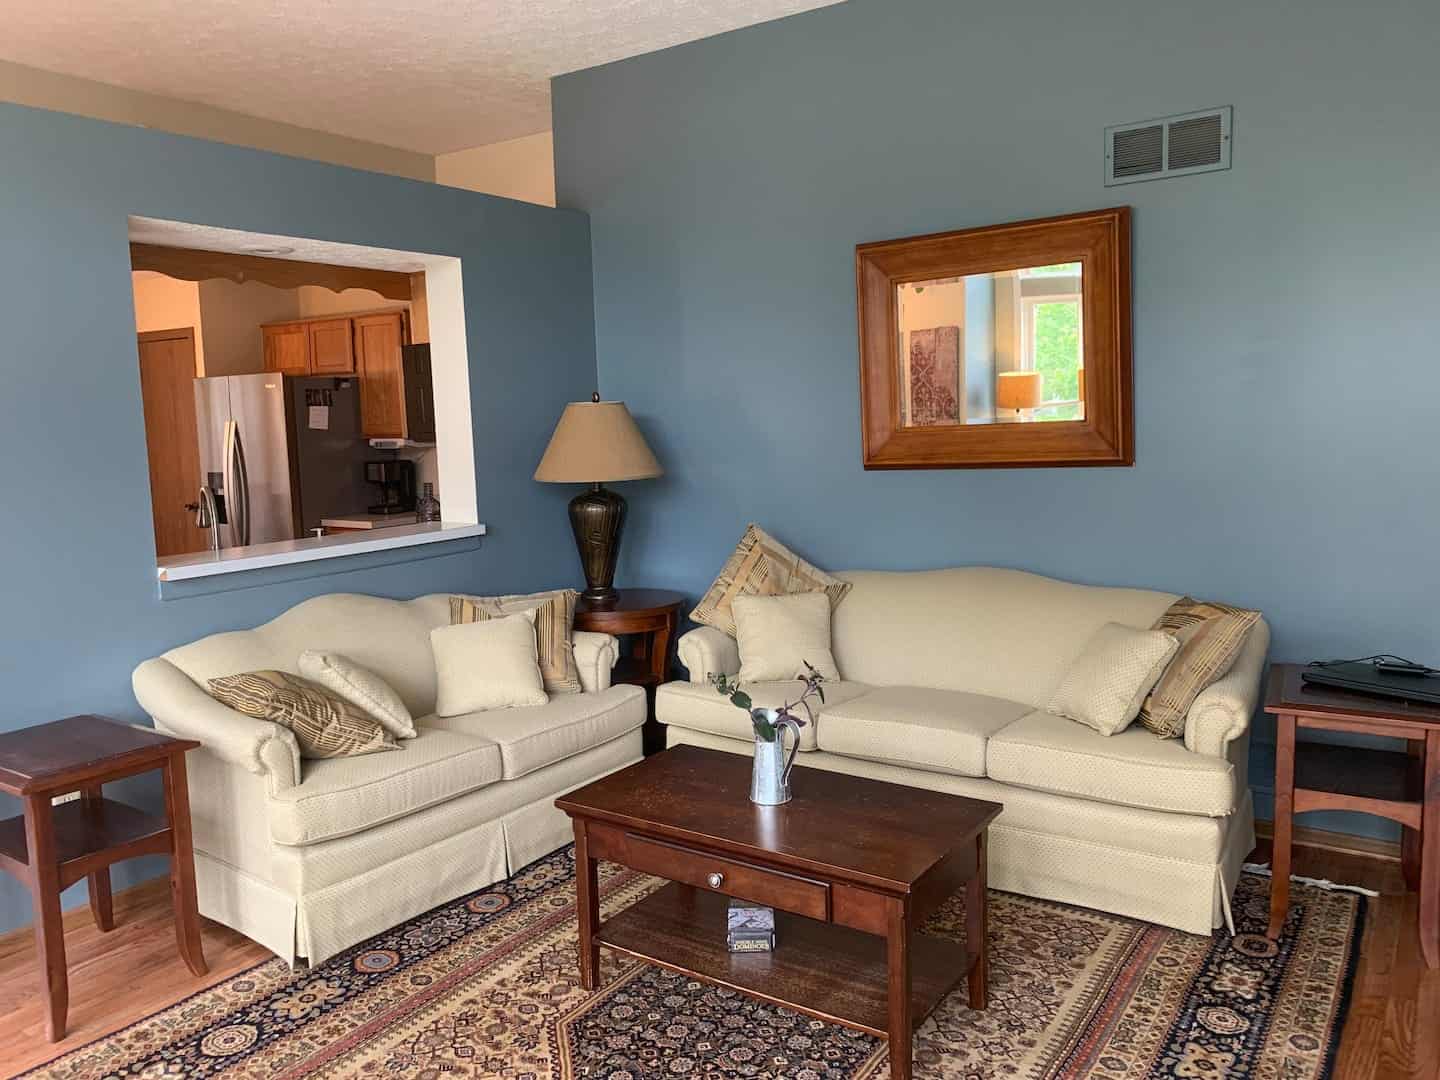 Image of Airbnb rental in Columbus, Ohio